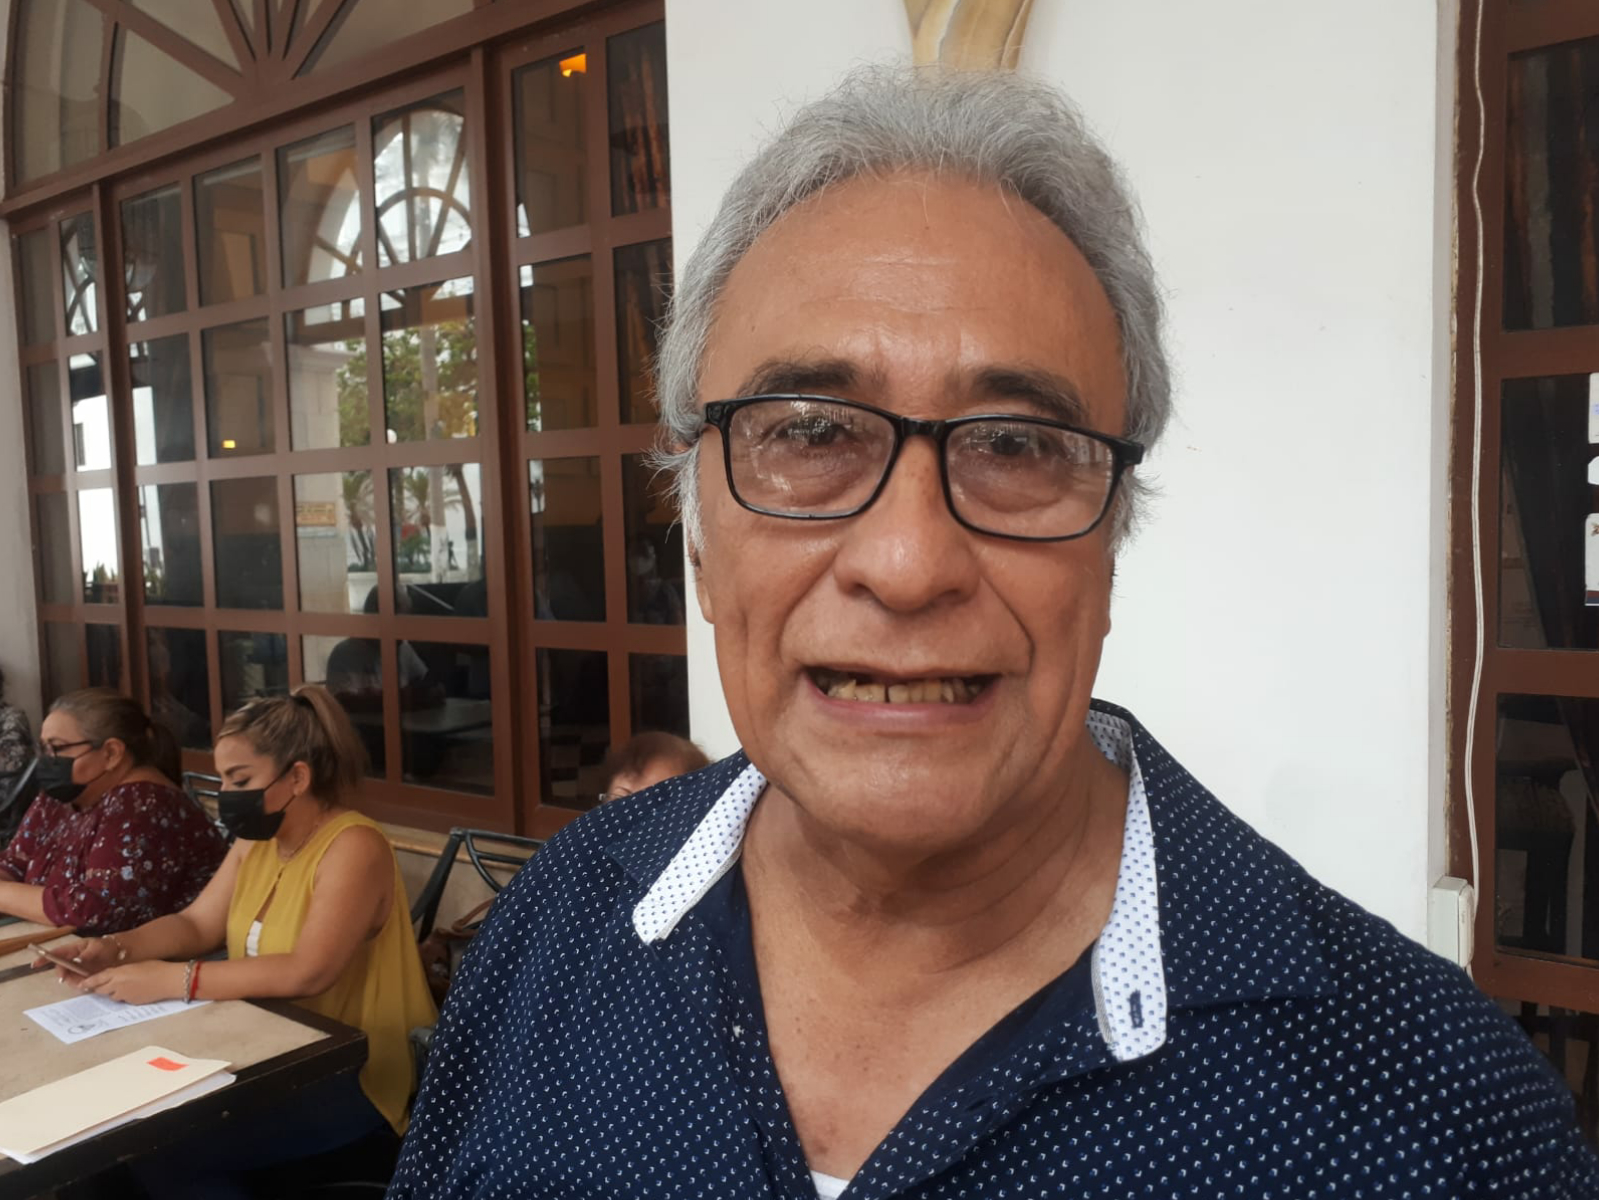 Jubilados de Veracruz están en contra de la ley pensonaria